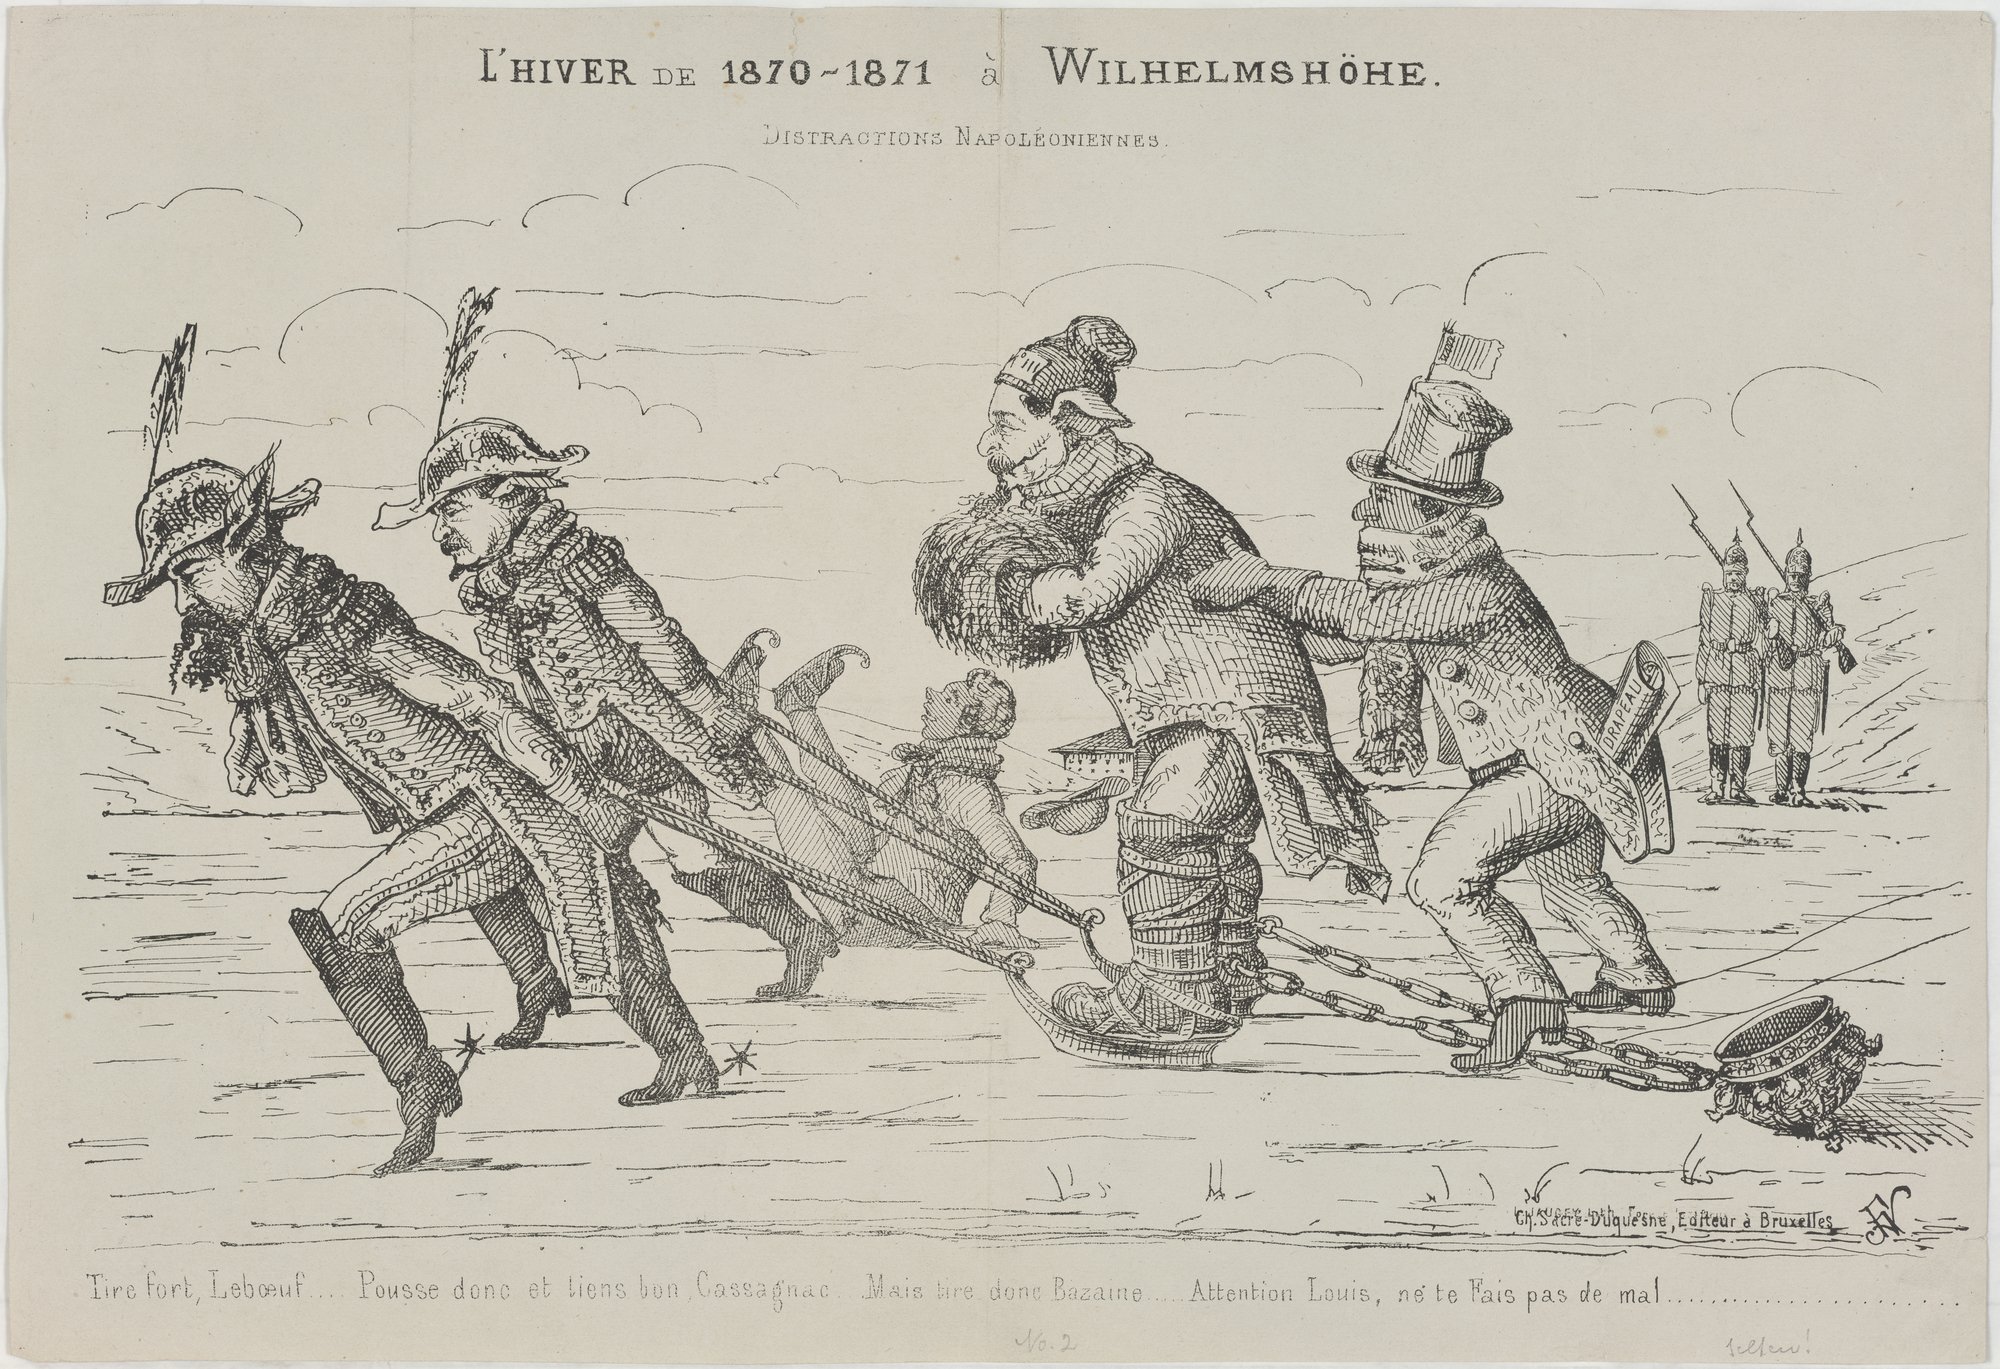 L'HIVER DE 1870-1871 à WILHELMSHÖHE./ DISTRACTIONS NAPOLÈONIENNES. (Kulturstiftung Sachsen-Anhalt Public Domain Mark)